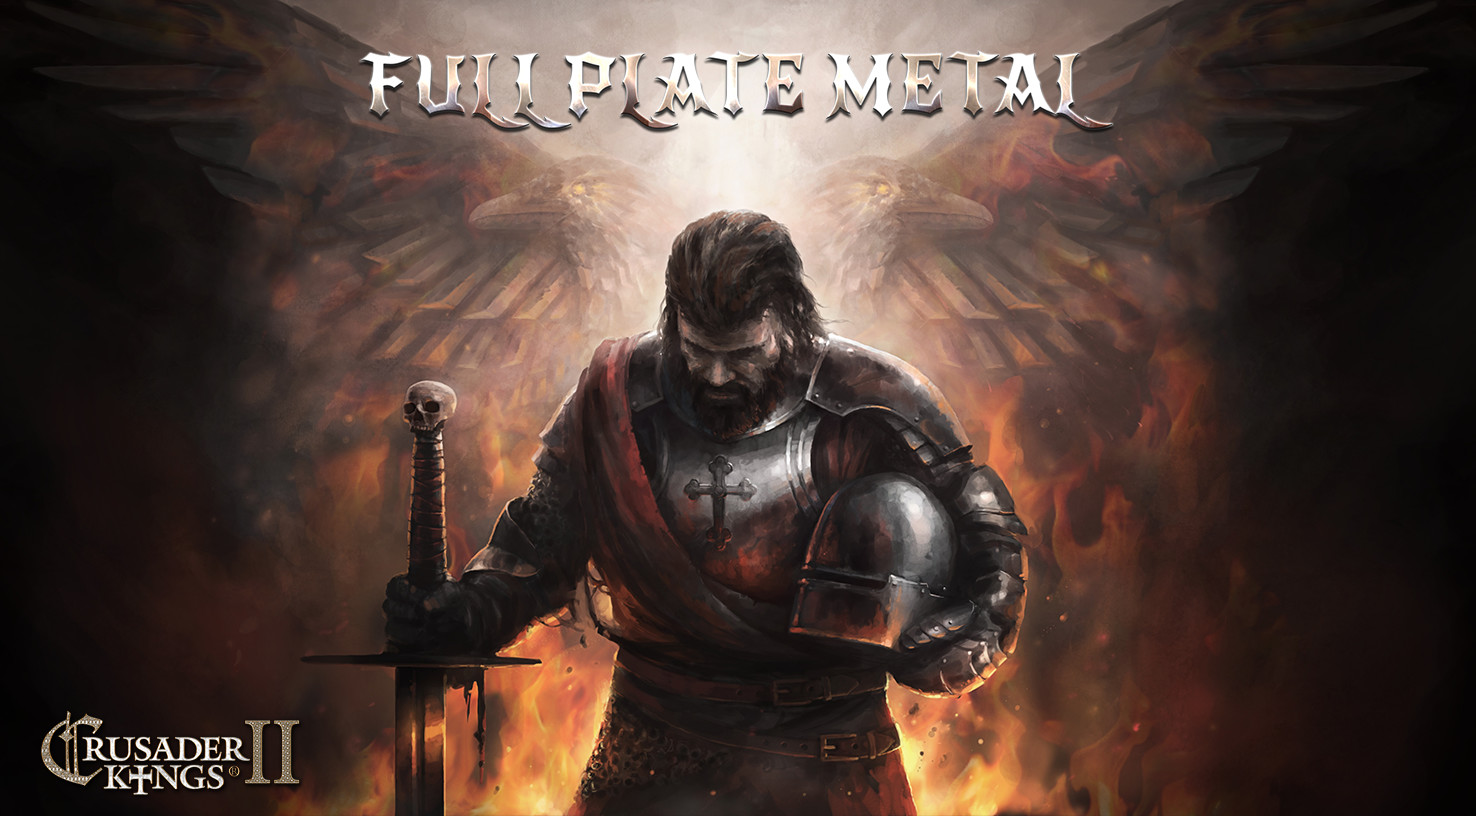 Crusader Kings II - Full Plate Metal DLC Steam CD Key, 1.84$